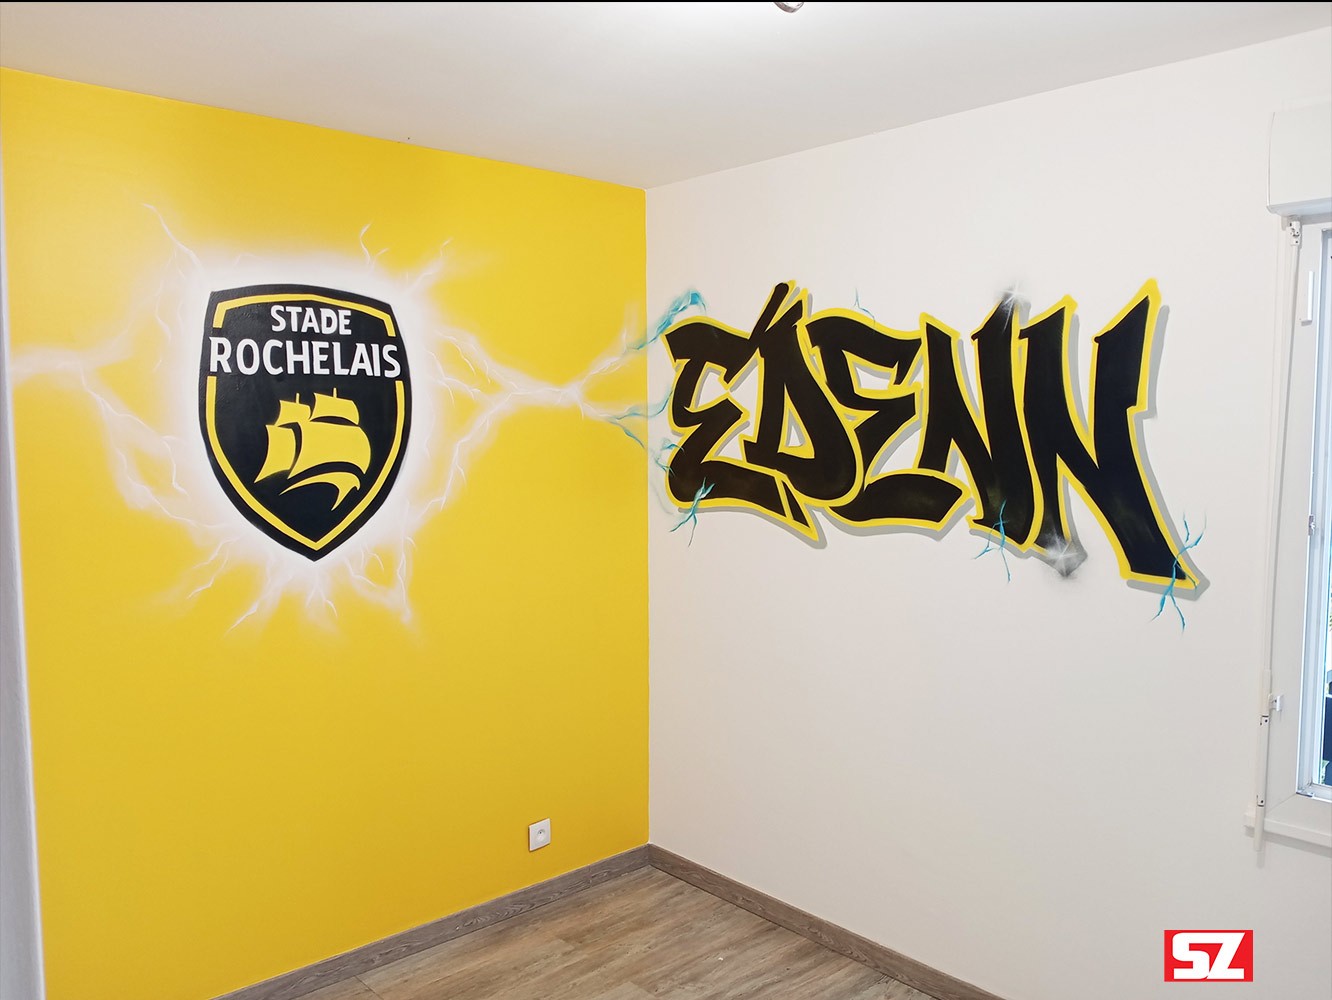 Graffiti-stade-rochelais-logo-rugby-prenom-edenn-lettrage-suoz-graffeur-professionnel-la-rochelle